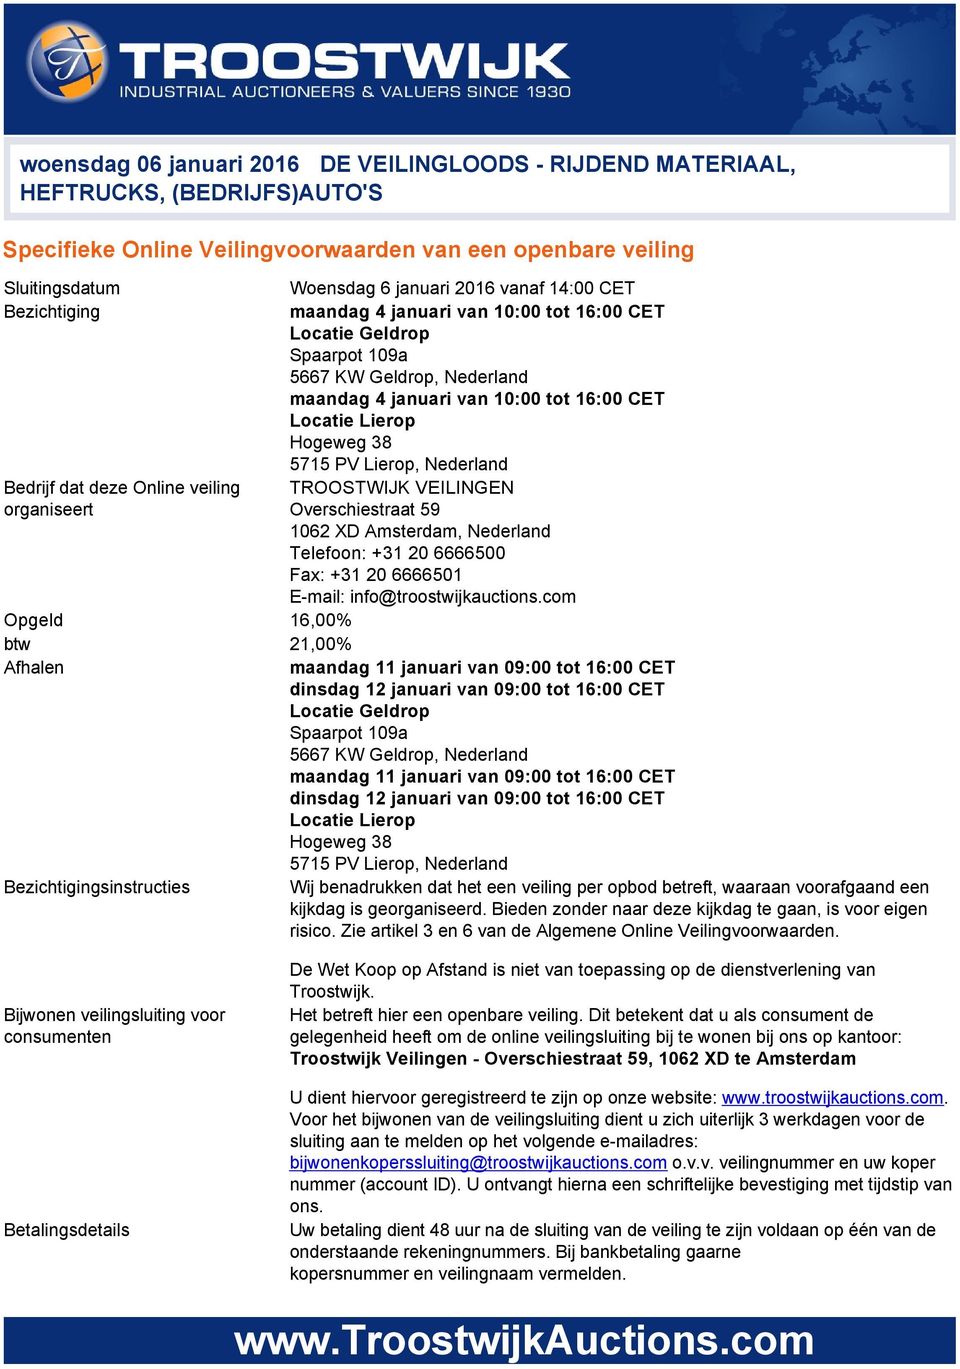 Lierop, Nederland Bedrijf dat deze Online veiling TROOSTWIJK VEILINGEN organiseert Overschiestraat 59 1062 XD Amsterdam, Nederland Telefoon: +31 20 6666500 Fax: +31 20 6666501 E mail: